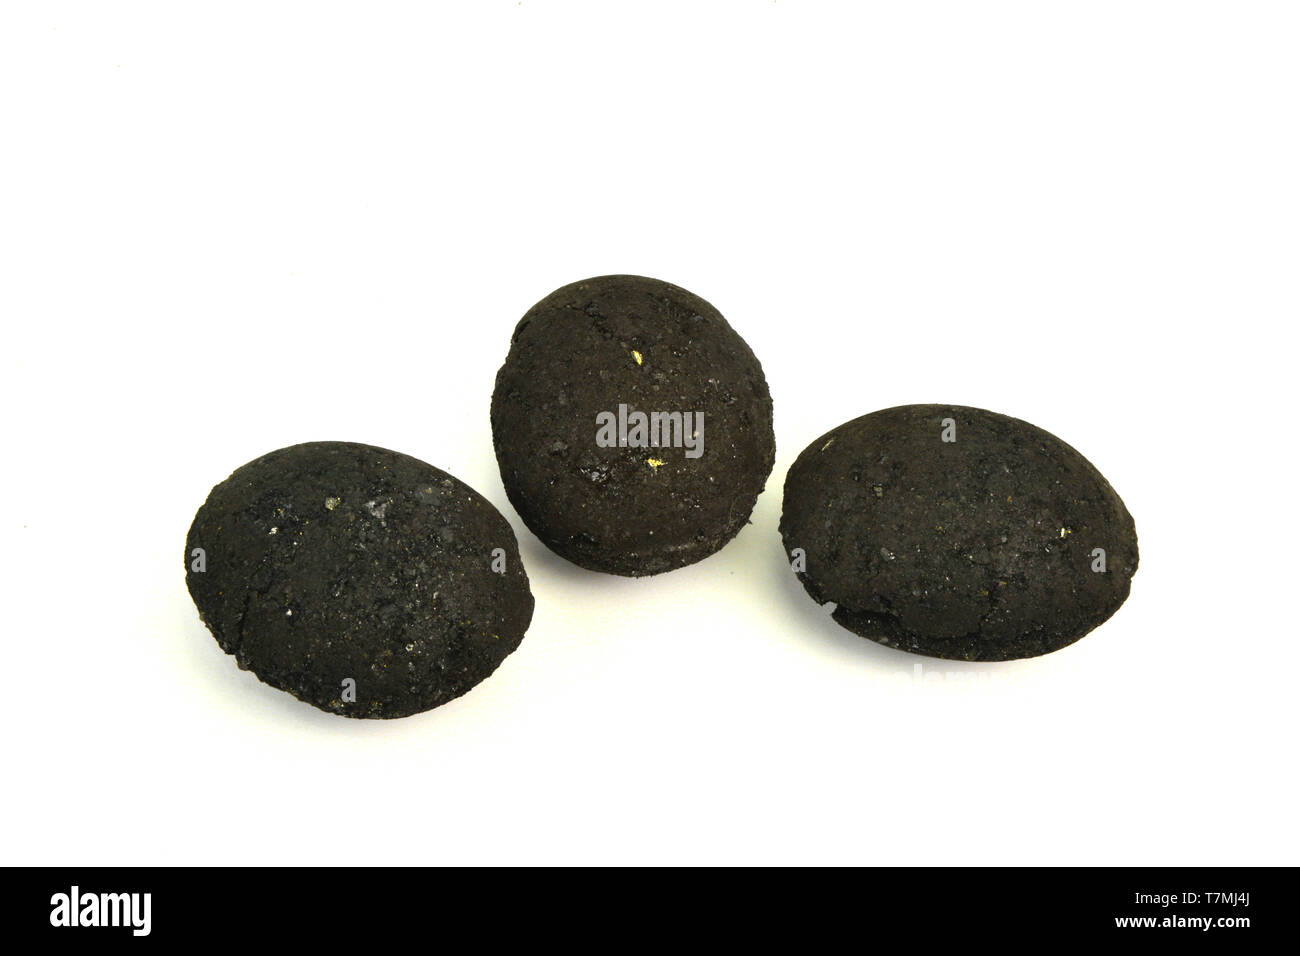 Carbone, tre uova a forma di bricchette realizzate comprimendo i frammenti e polvere di carbone estratto. Studio Immagine contro uno sfondo bianco. Germania Foto Stock